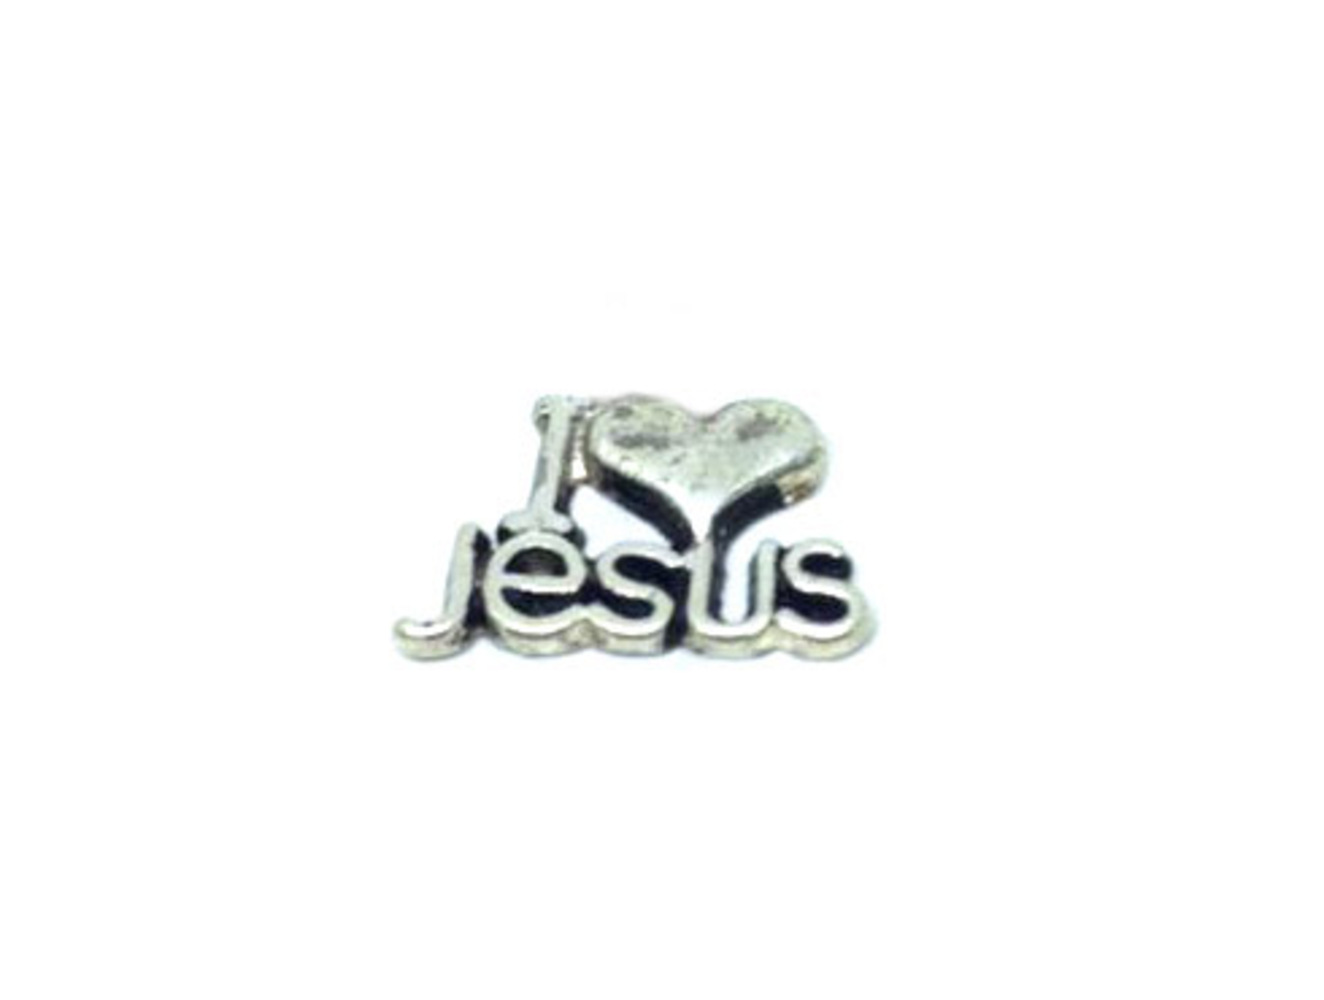 Pewter "I Love" Jesus Pin